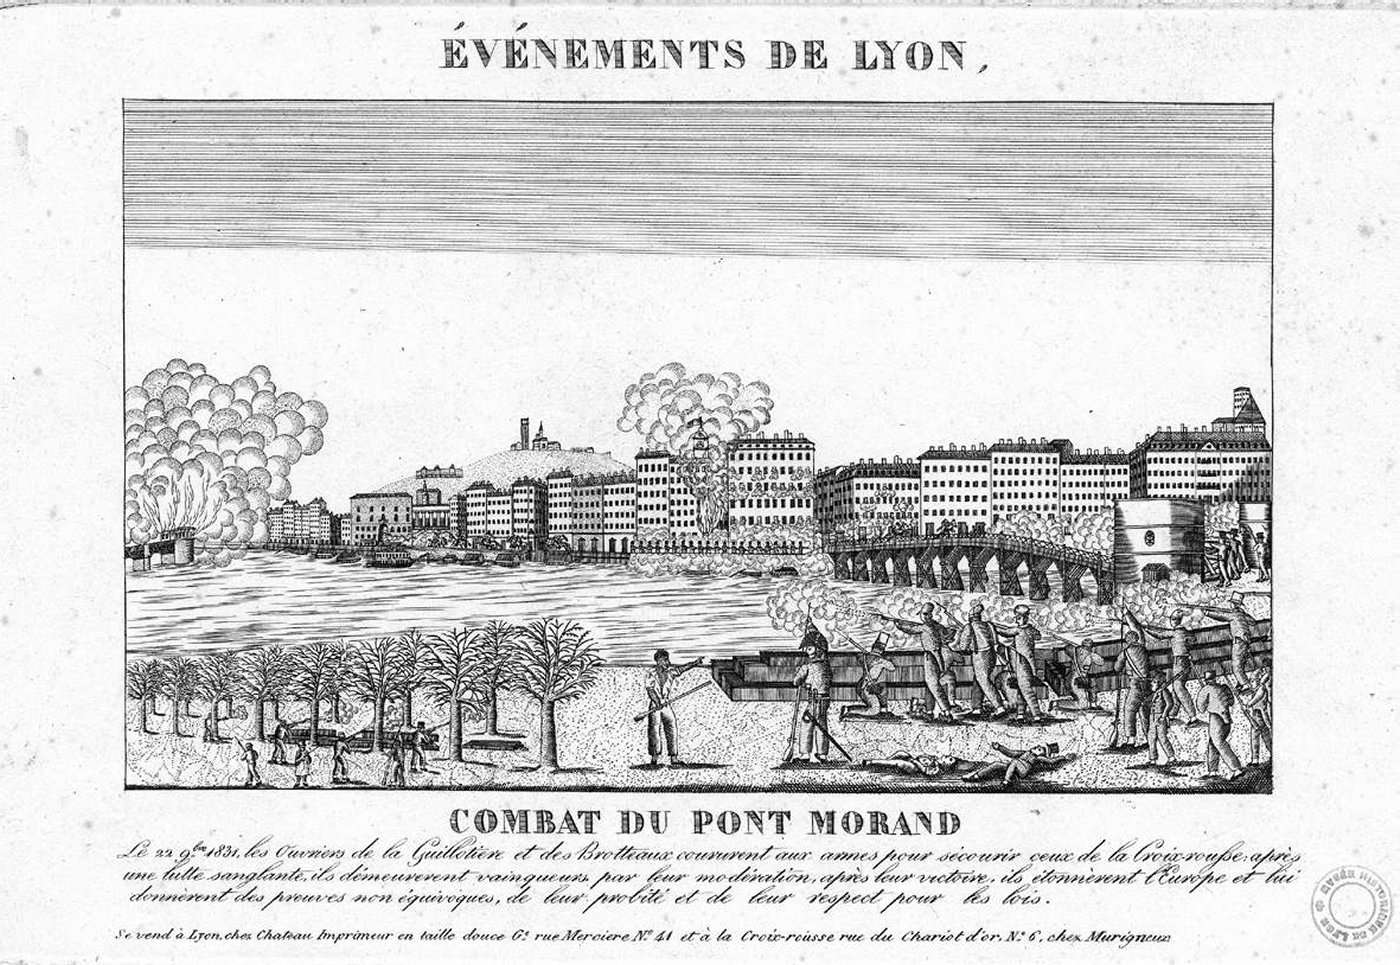 Les événements de Lyon, 22 novembre 1831. Combat du Pont Morand.